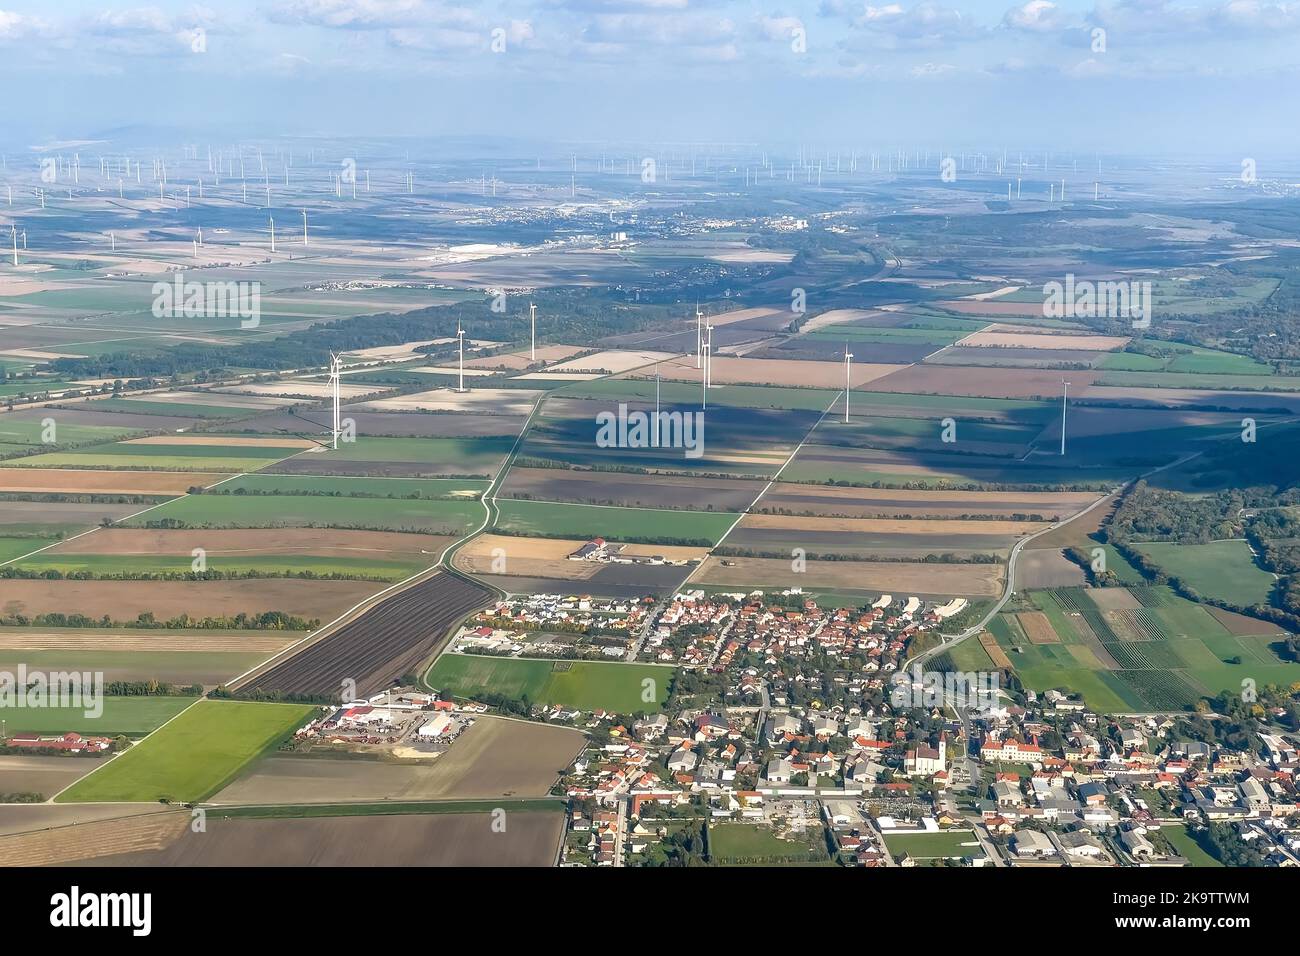 Fotografia aerea che mostra la distanza dalle turbine eoliche su terreni agricoli all'area edificata, Marktgemeinde Sommerein, bassa Austria, Austria Foto Stock